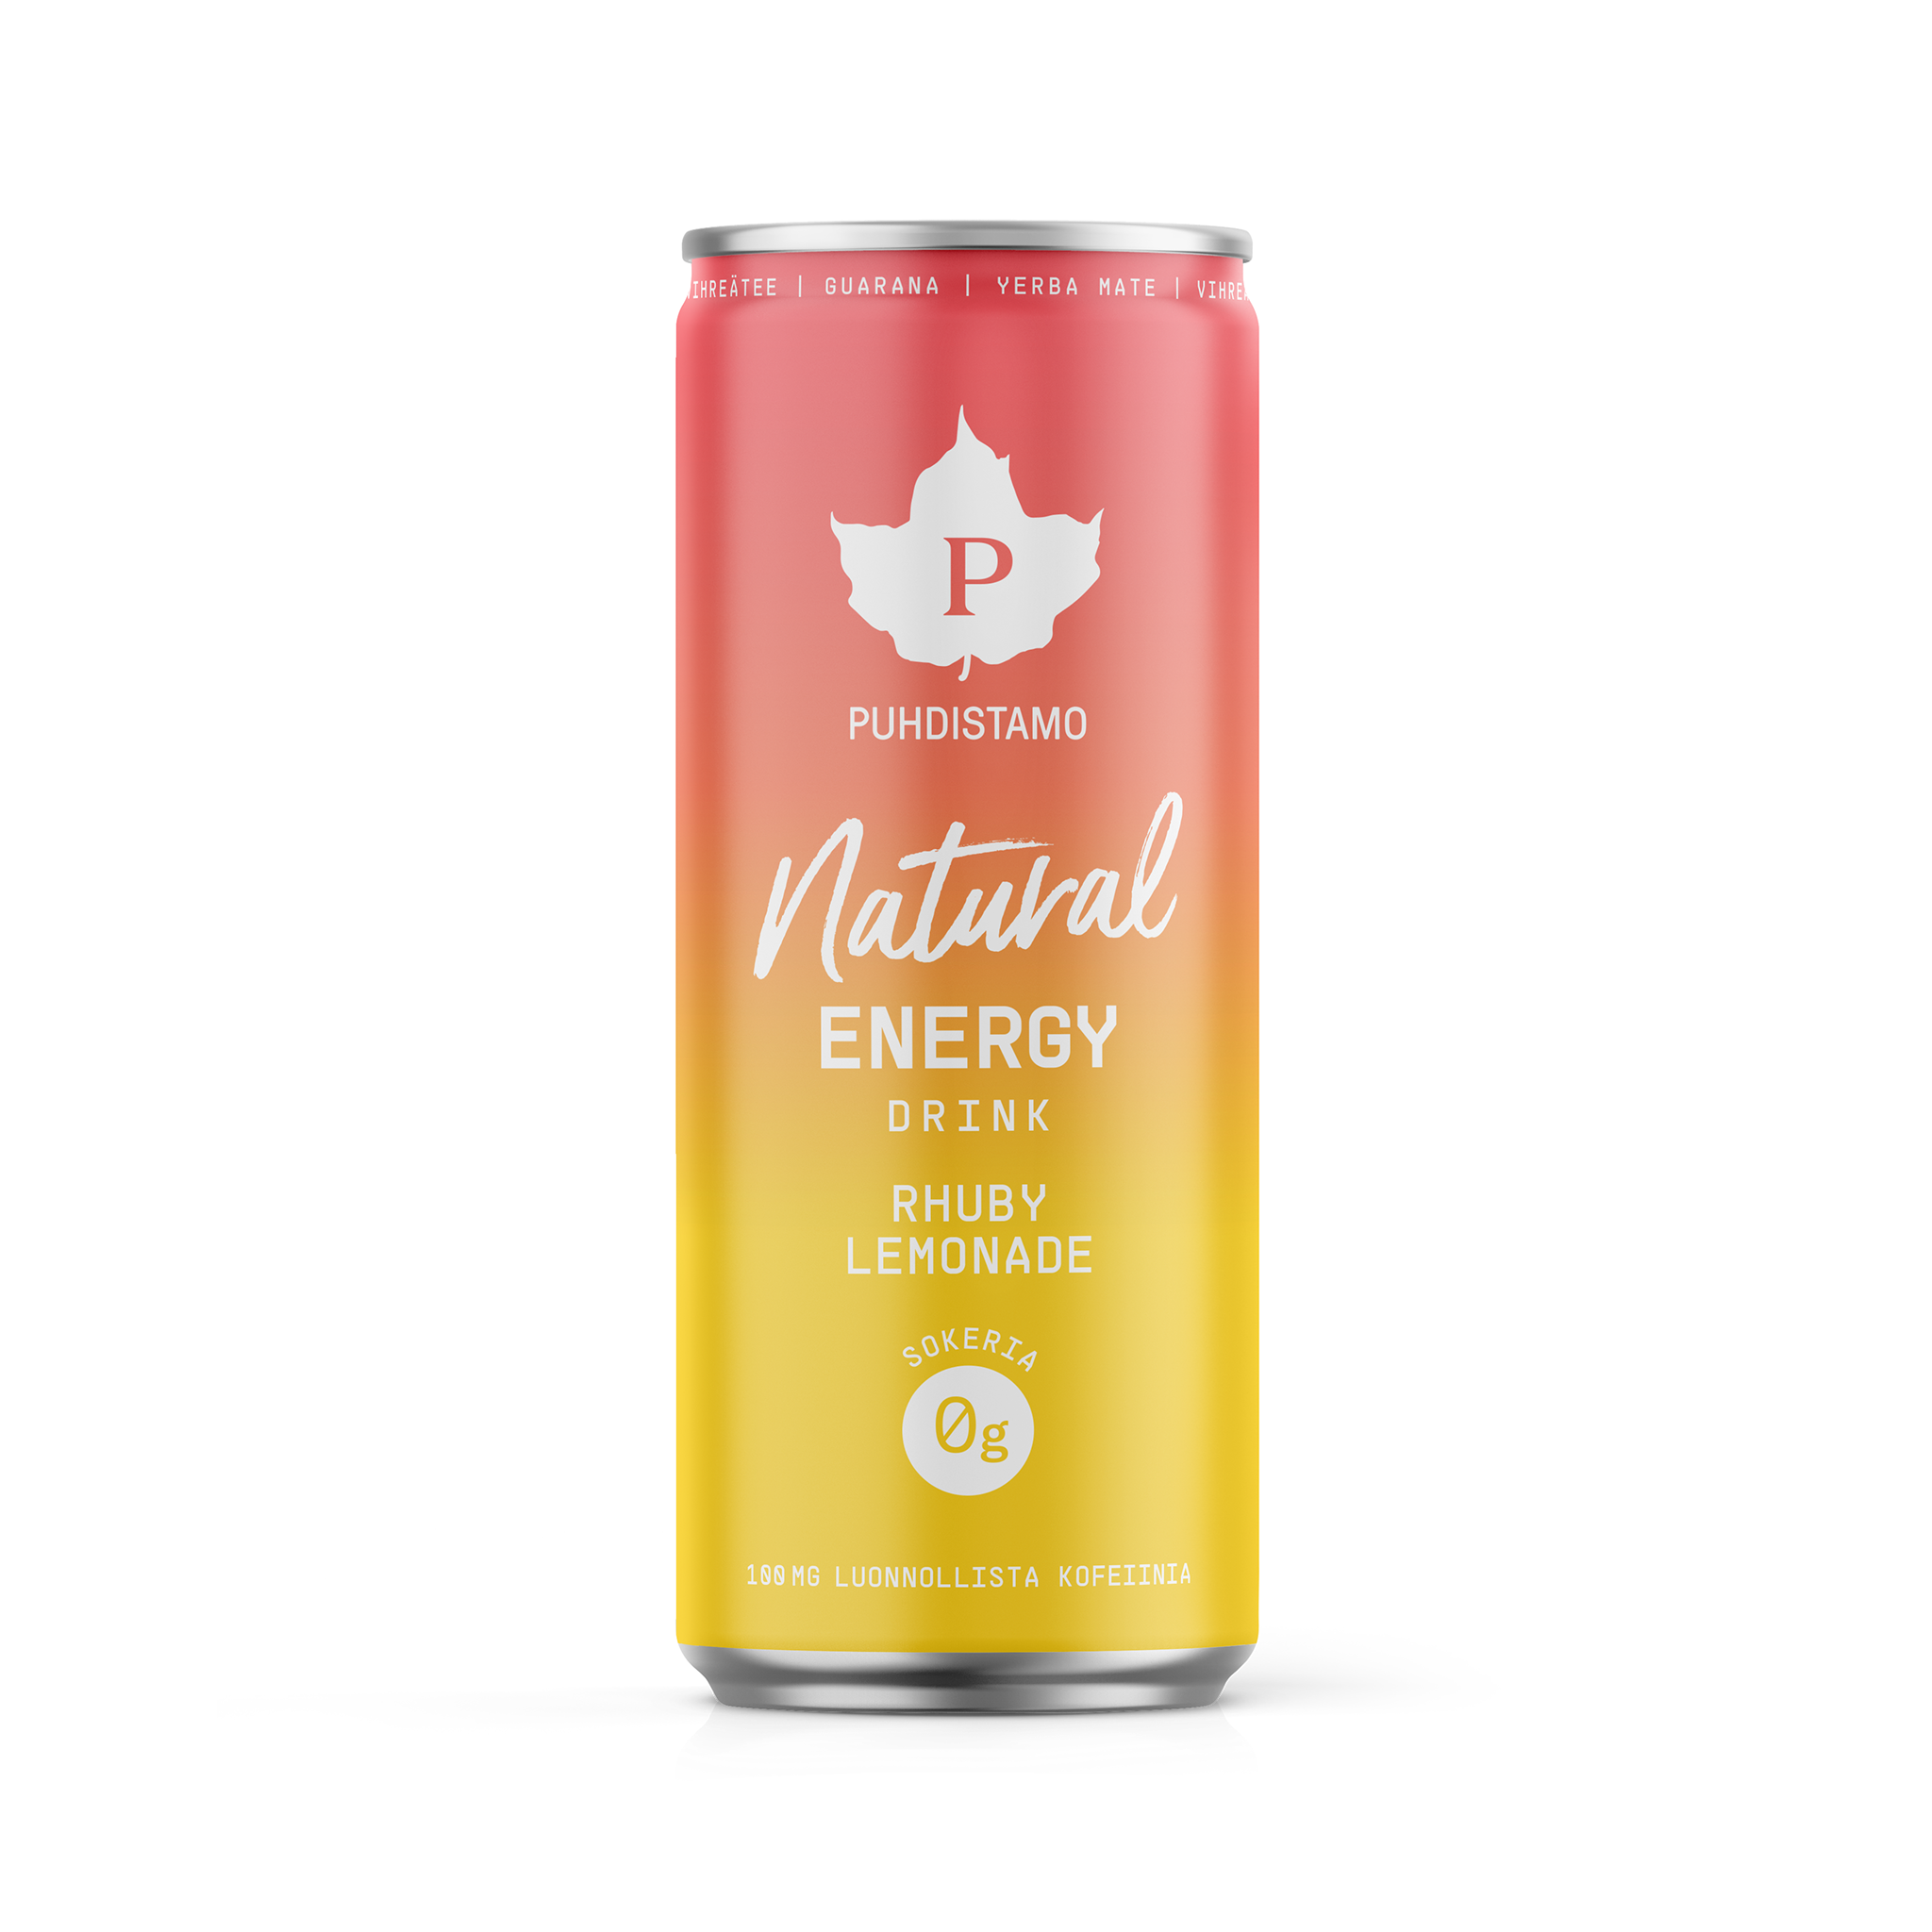 Natural Energy Drink Rhuby Lemonade